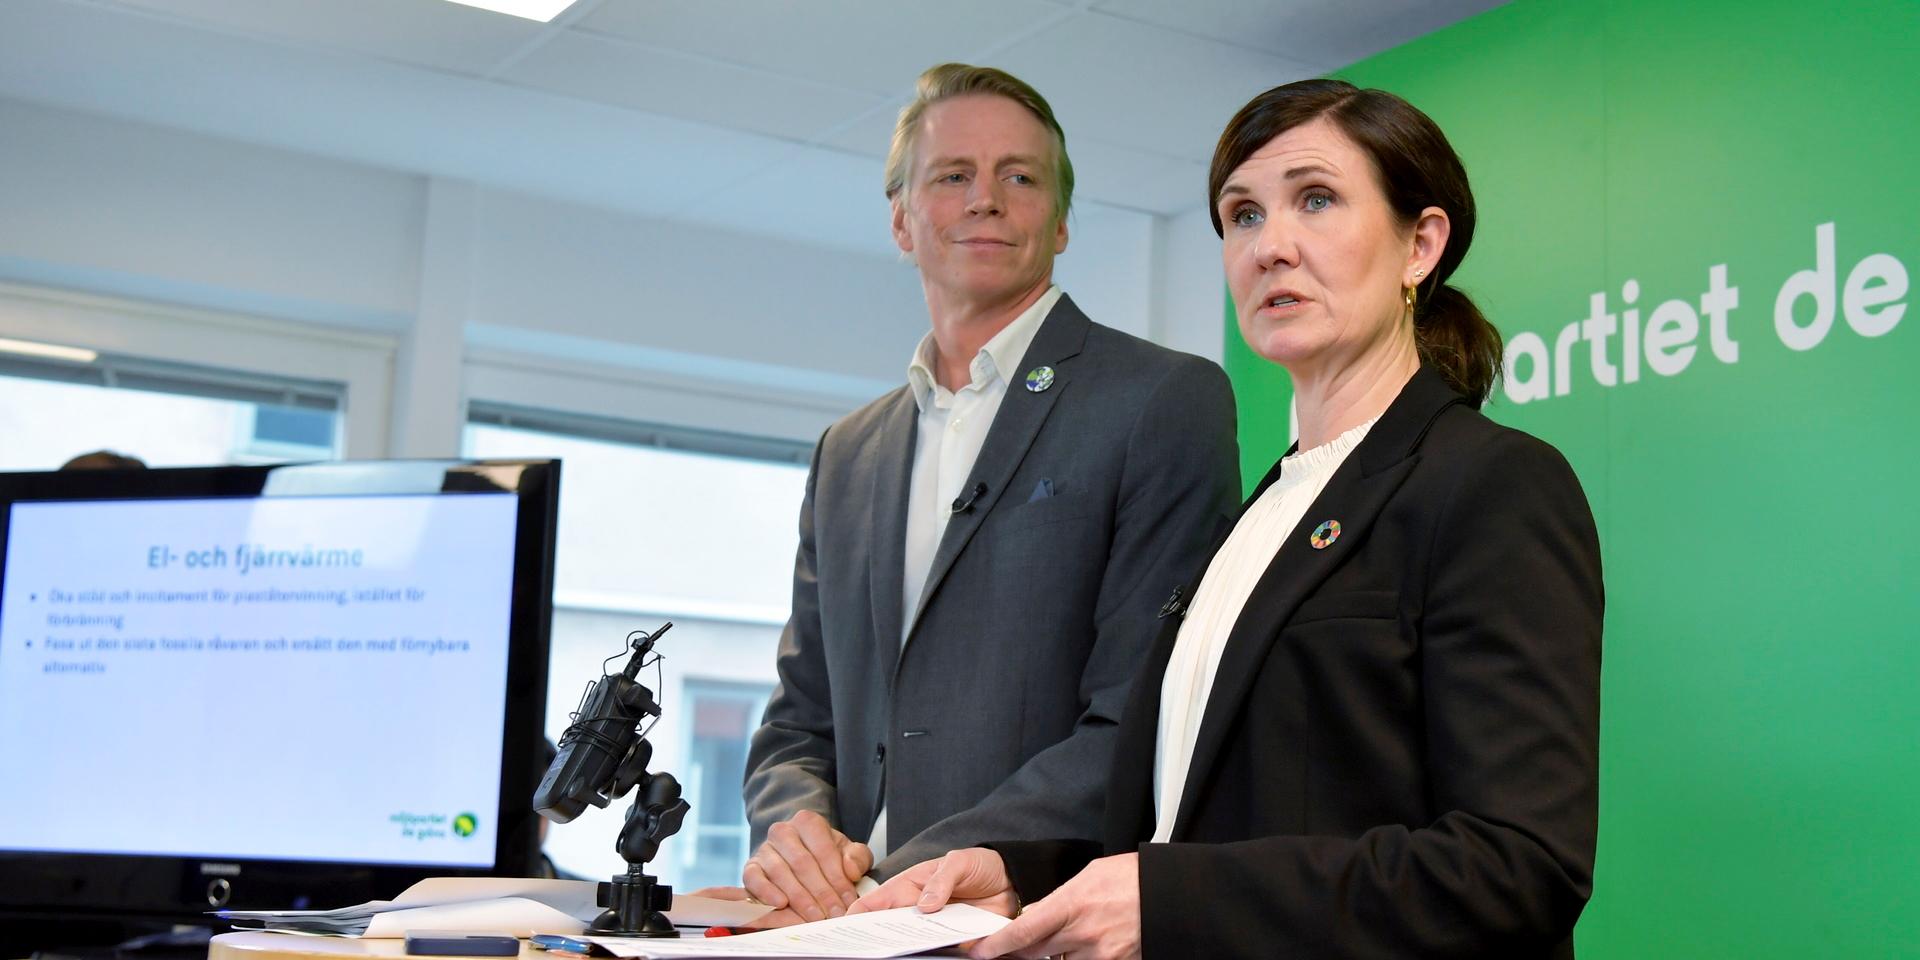 Målar framtiden mörkgrön. MP-språkrören Per Bolund och Märta Stenevi driver klimat- och miljöfrågorna hårt, i hopp om att rädda partiet över riksdagsspärren.